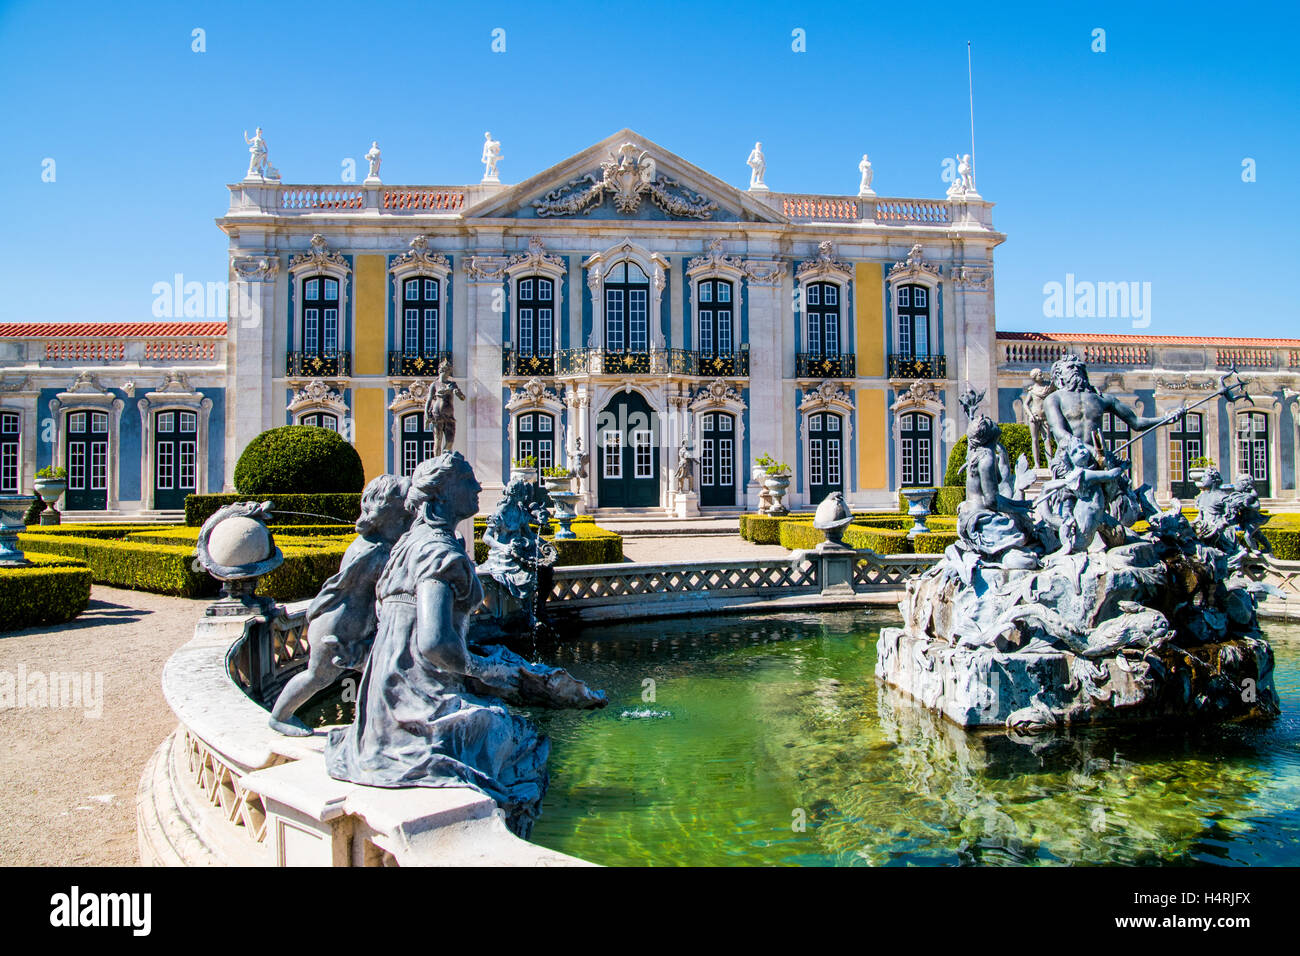 Fontaine de Neptune sur le premier plan et façade de palais de Queluz sur arrière-plan, Municipalité de Sintra, Lisbonne, Portugal Banque D'Images